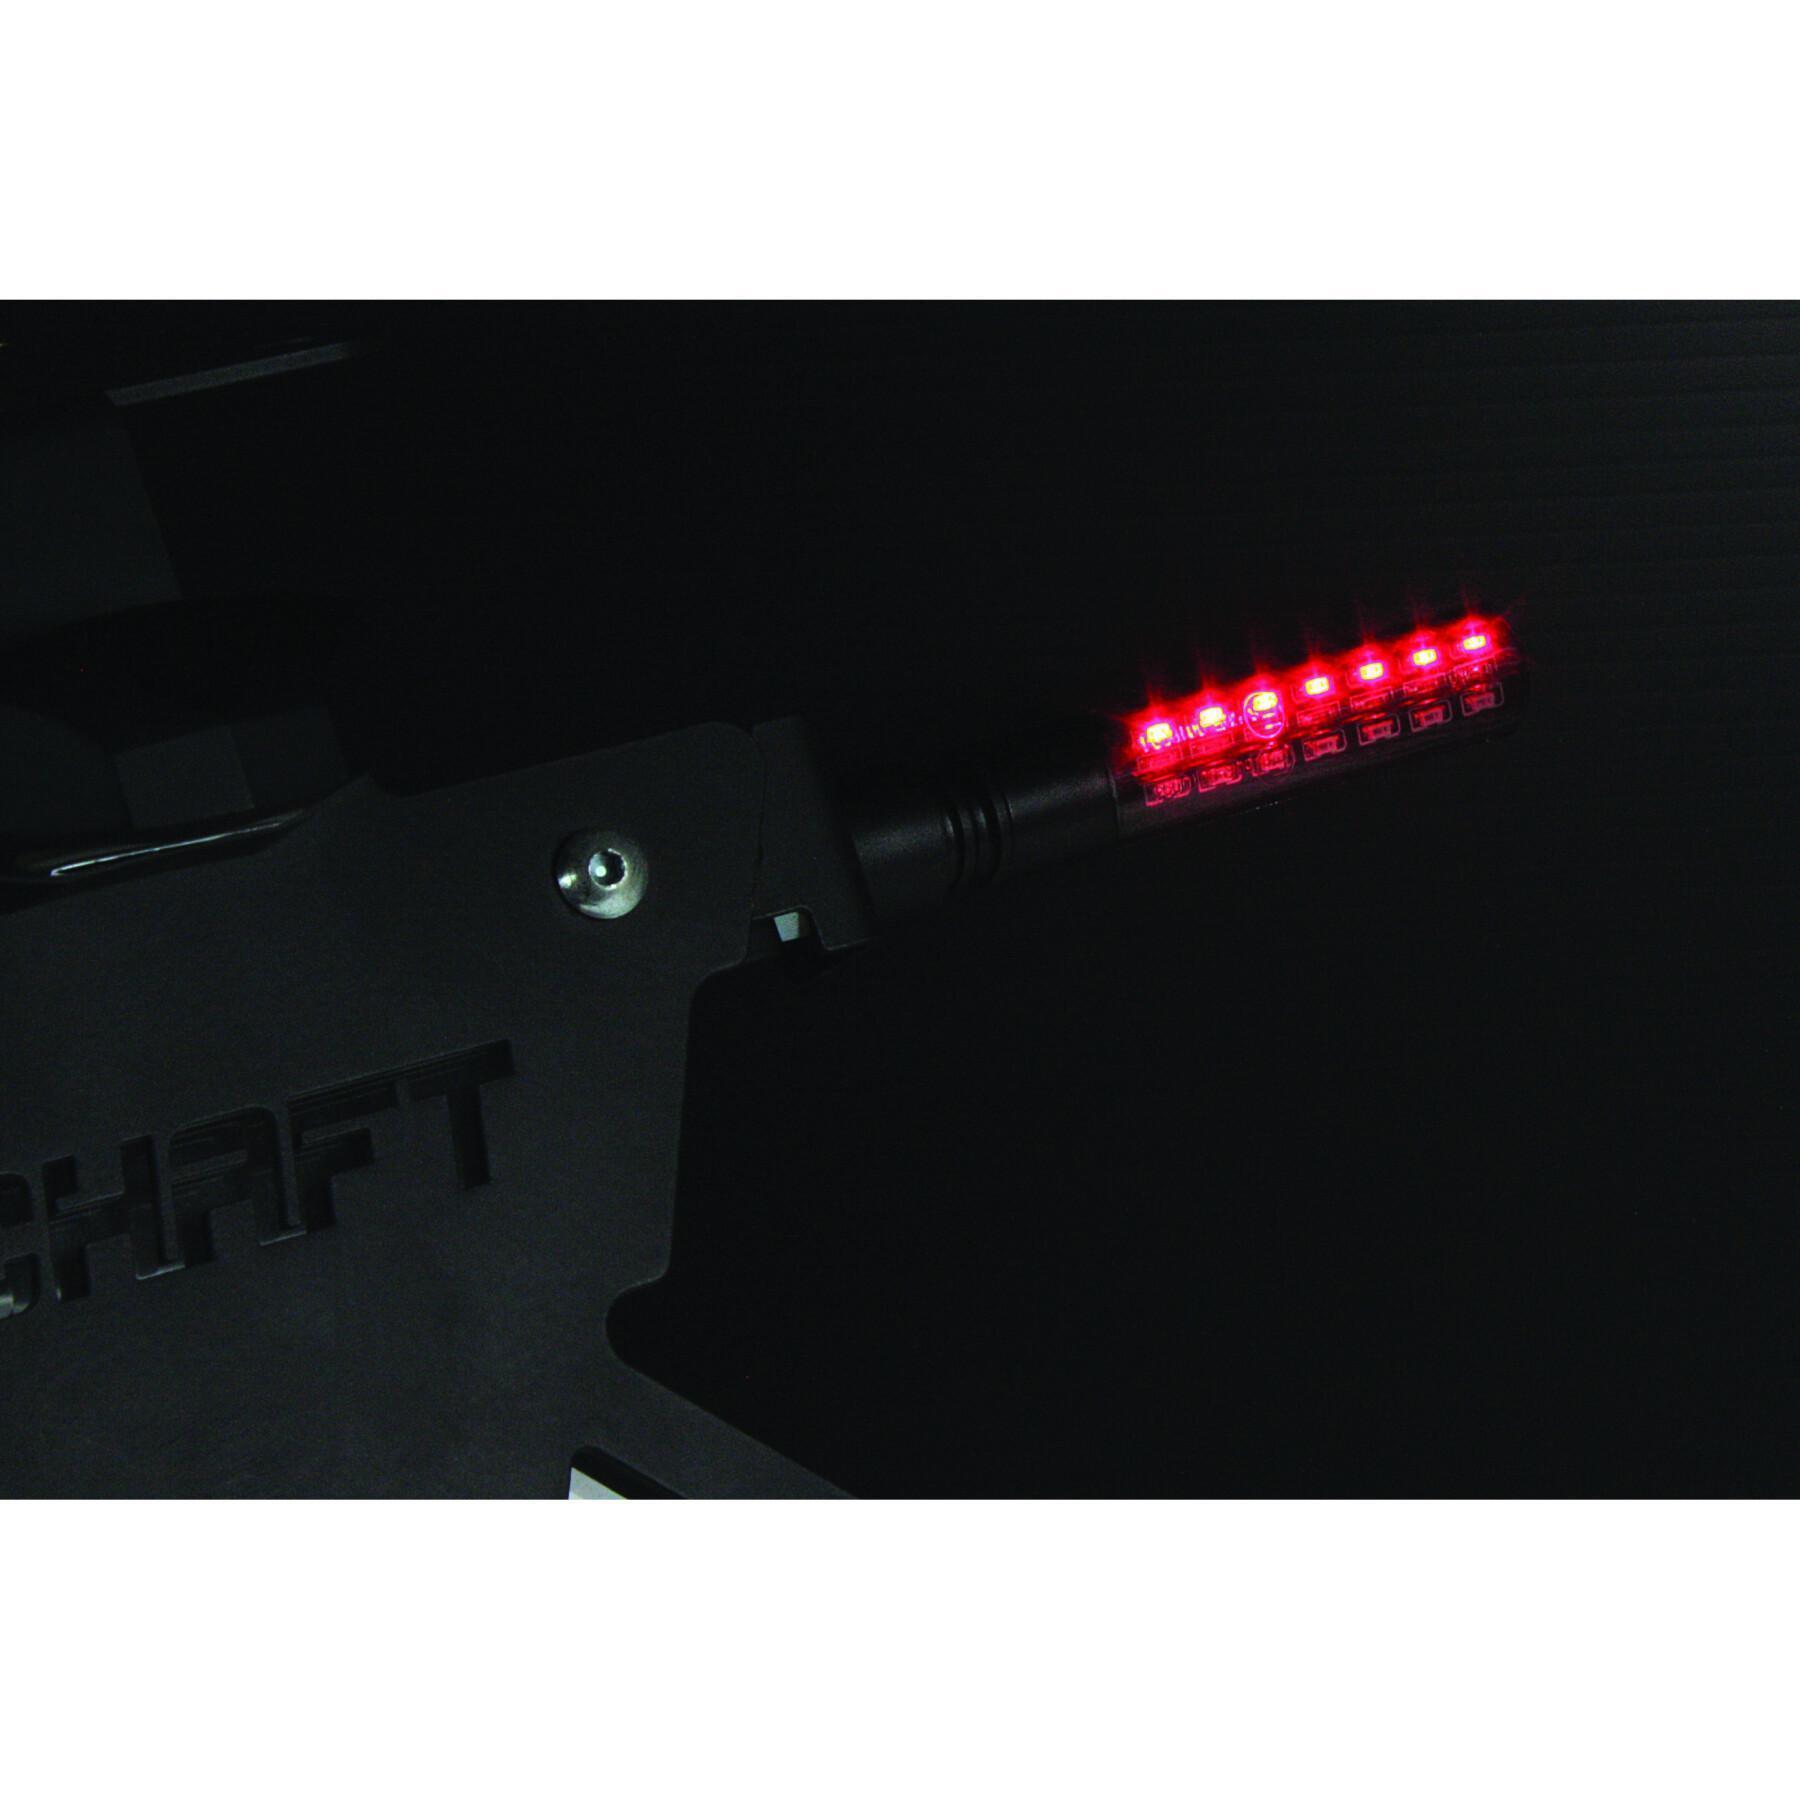 Intermitentes LED secuenciales multifunción Enigma - Chaft